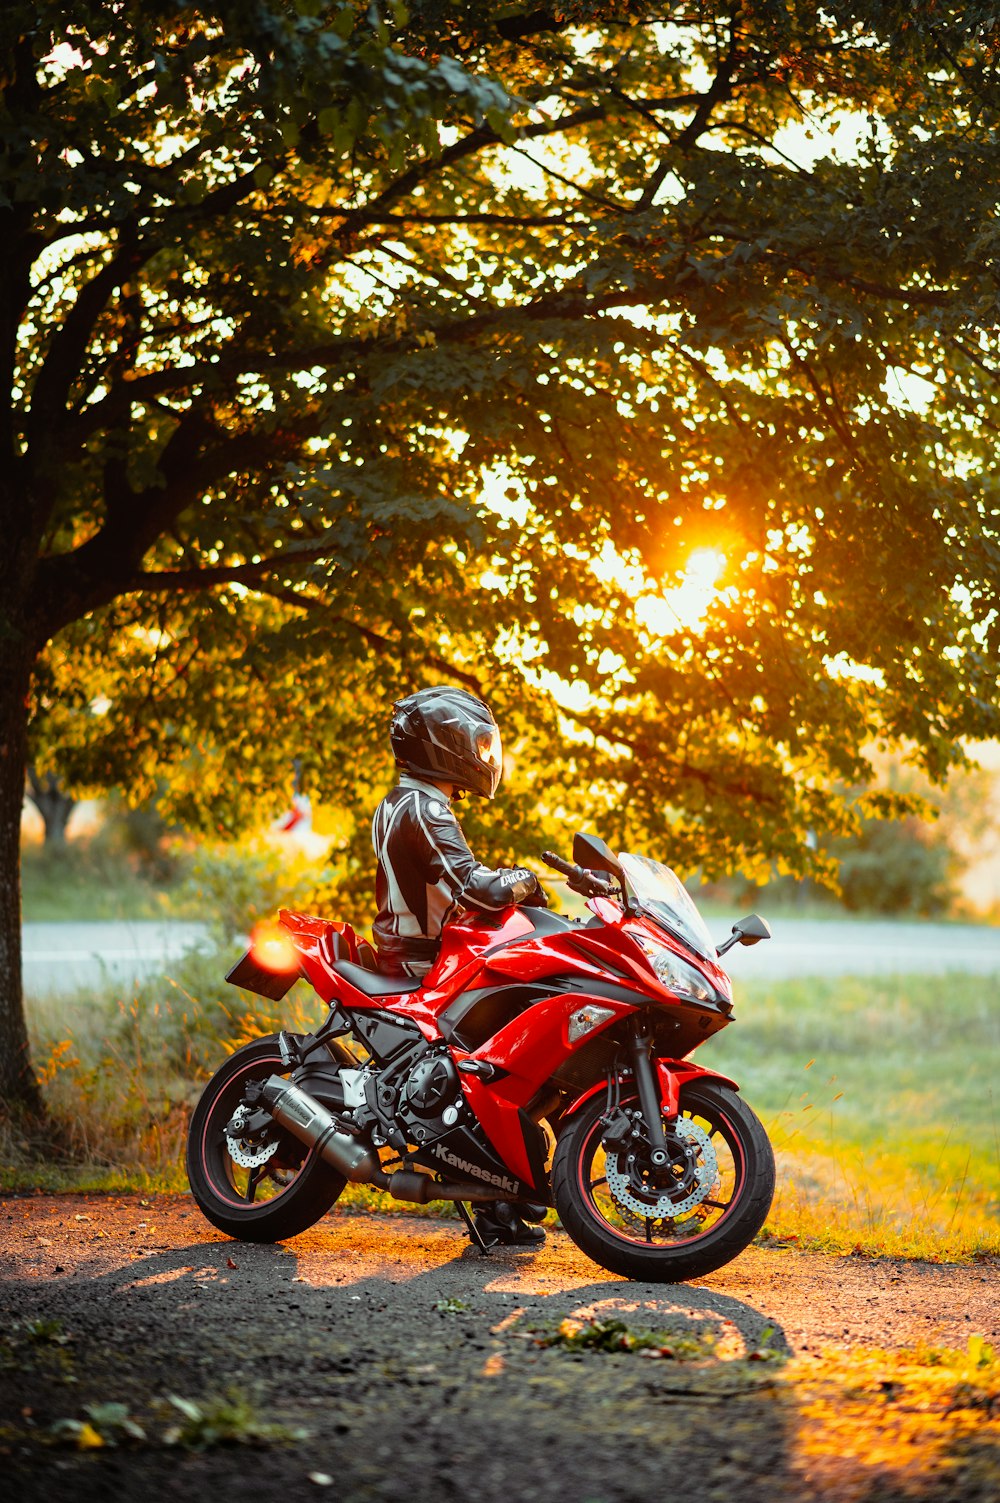 homem no capacete da motocicleta vermelha e preta que monta a motocicleta vermelha e preta durante o dia